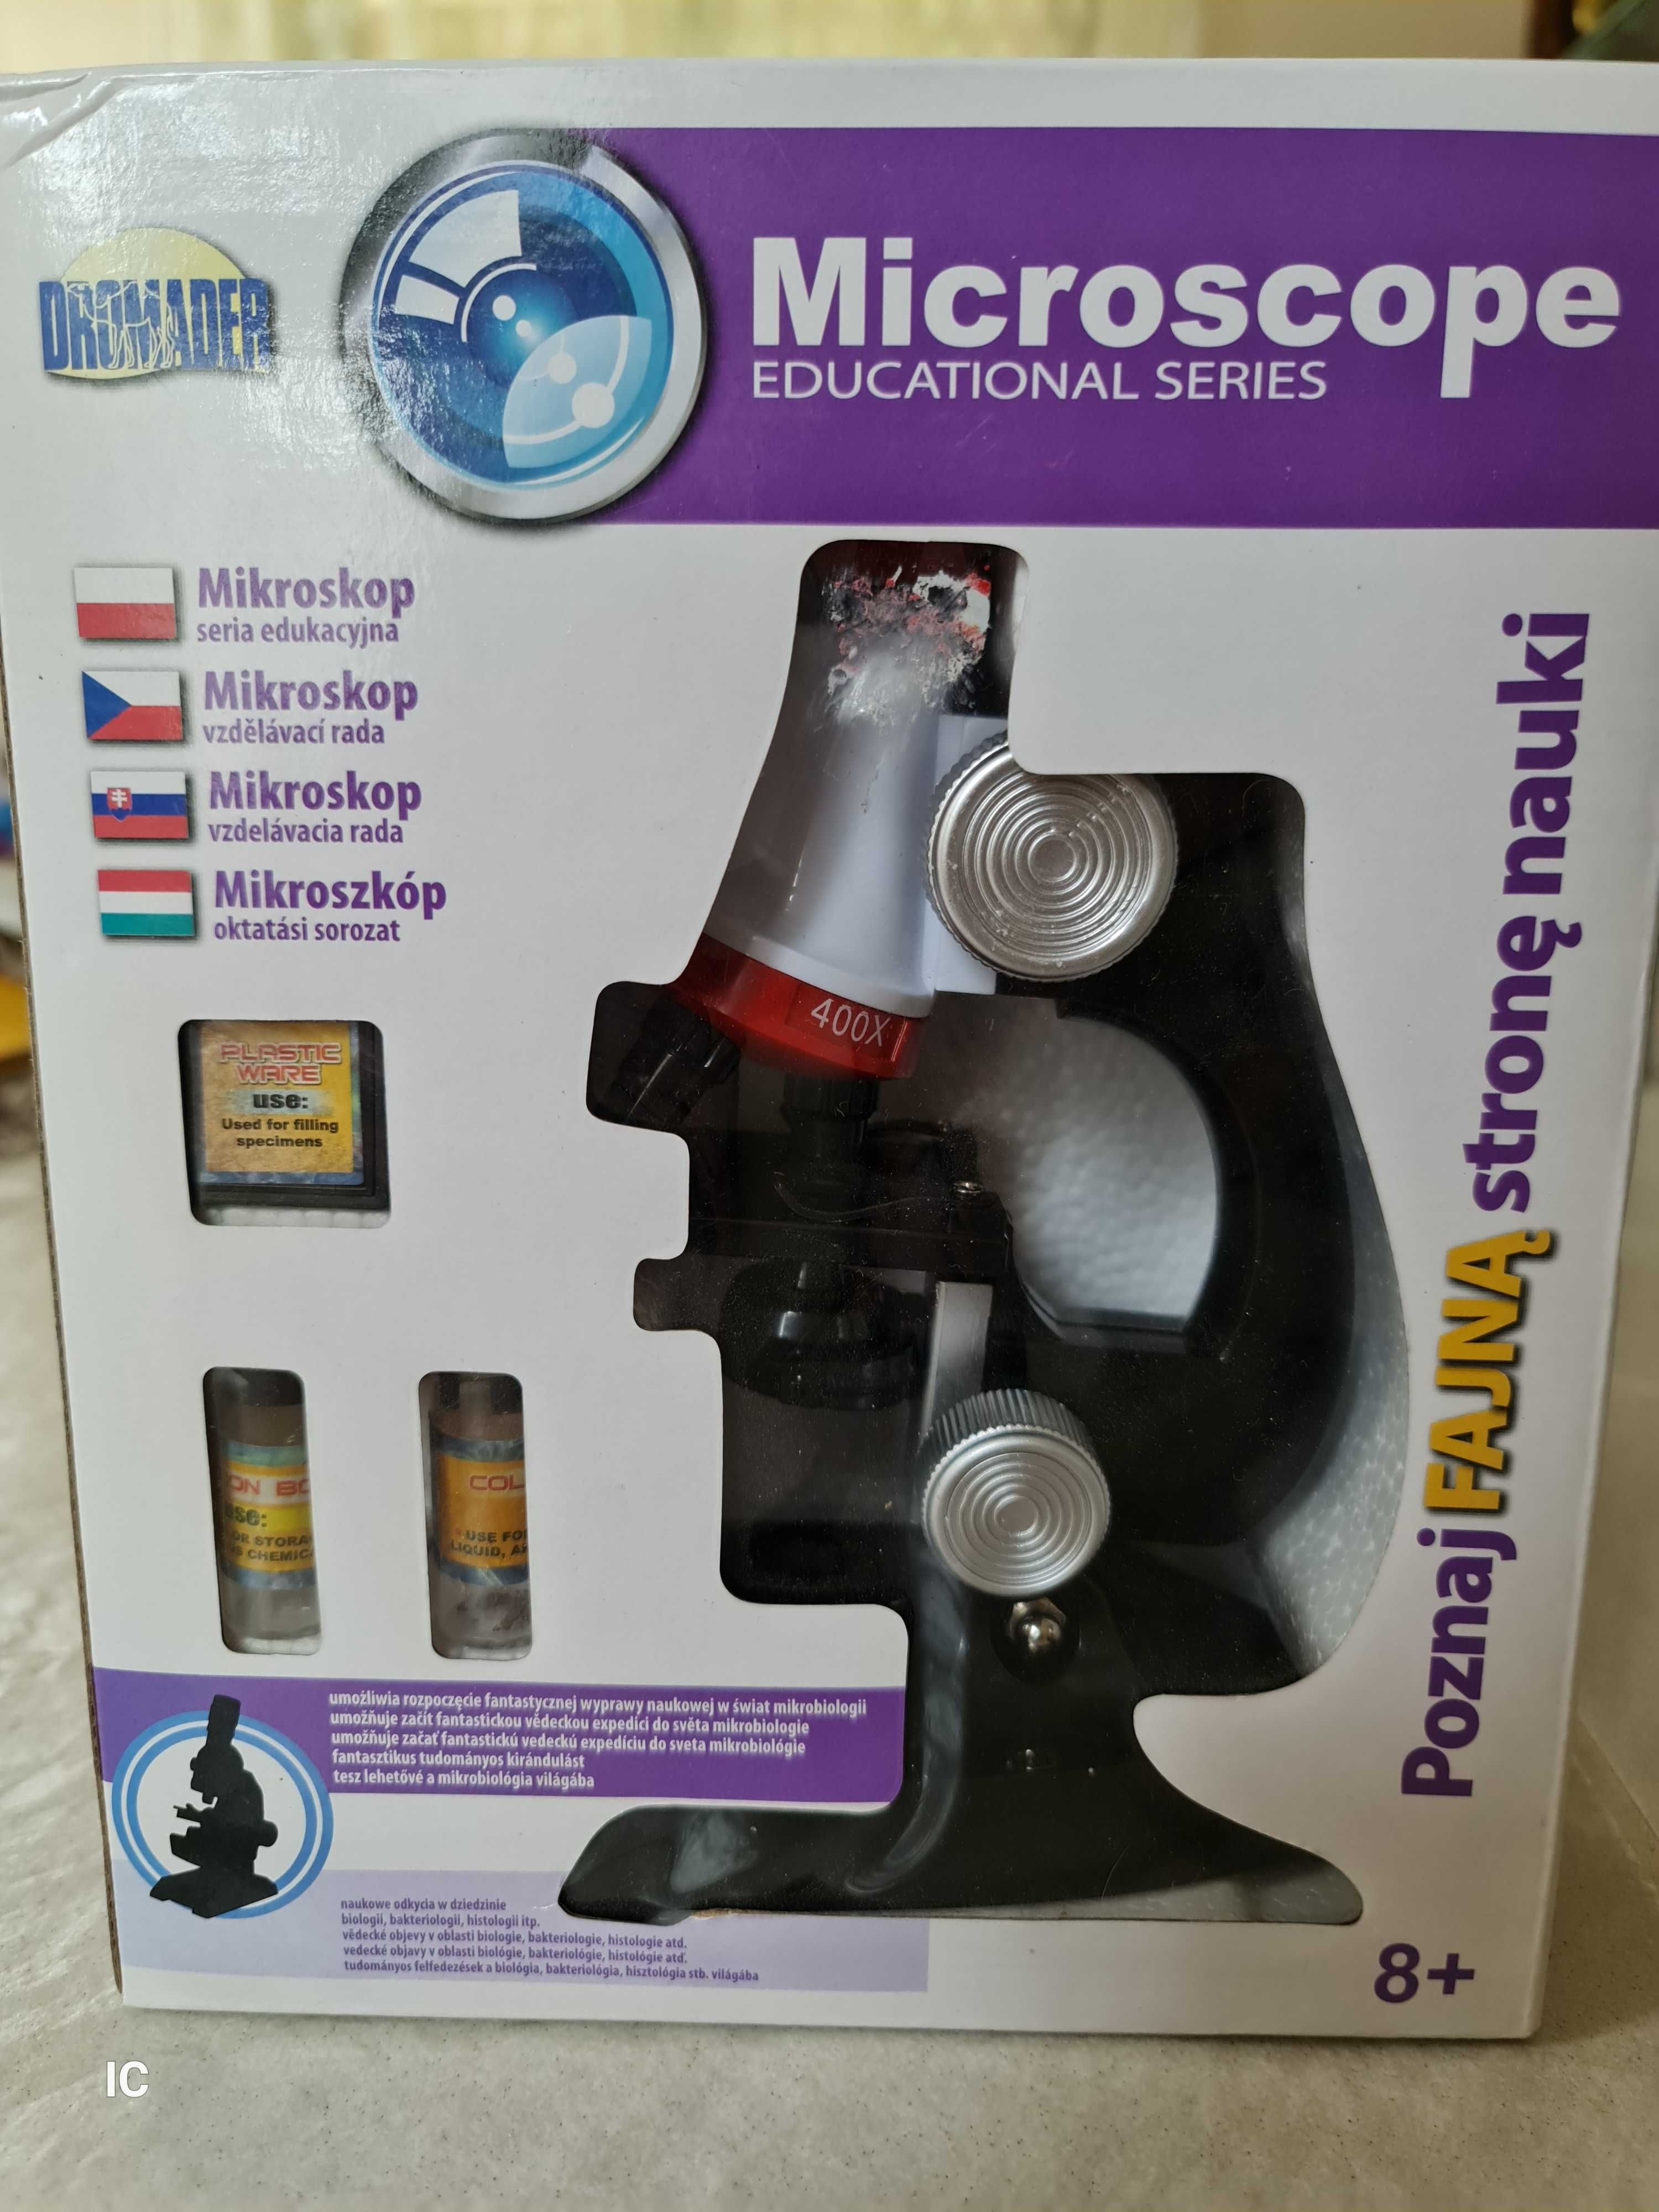 Edukacyjny mikroskop.